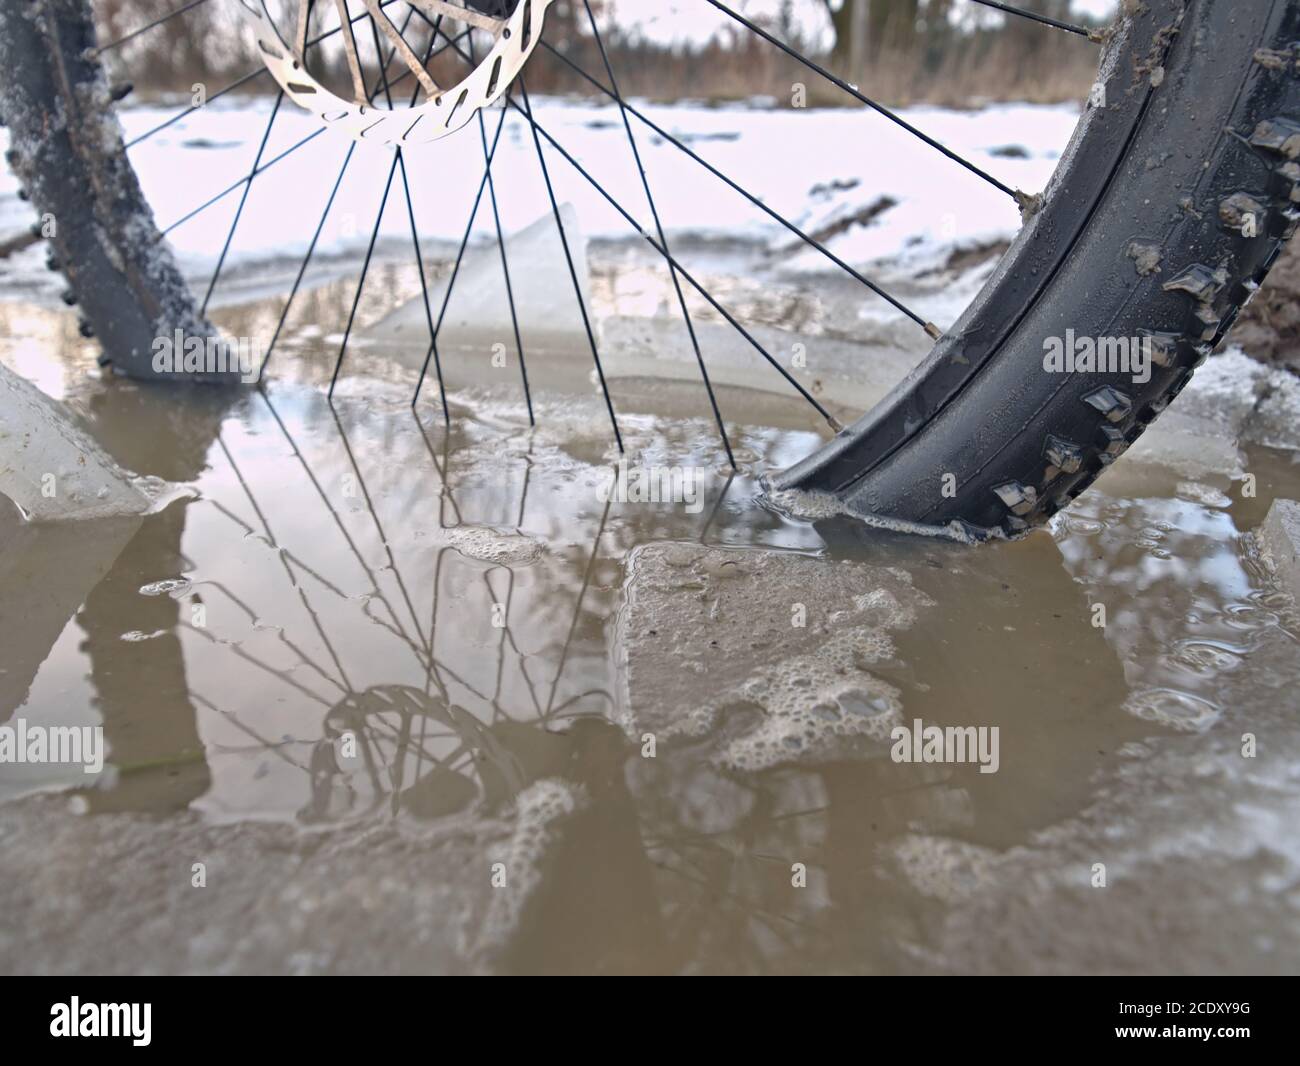 Vélo noyé dans la piscine boueuse en hiver. Morceaux de glace brisés autour du pneu de la zone de congélation Banque D'Images